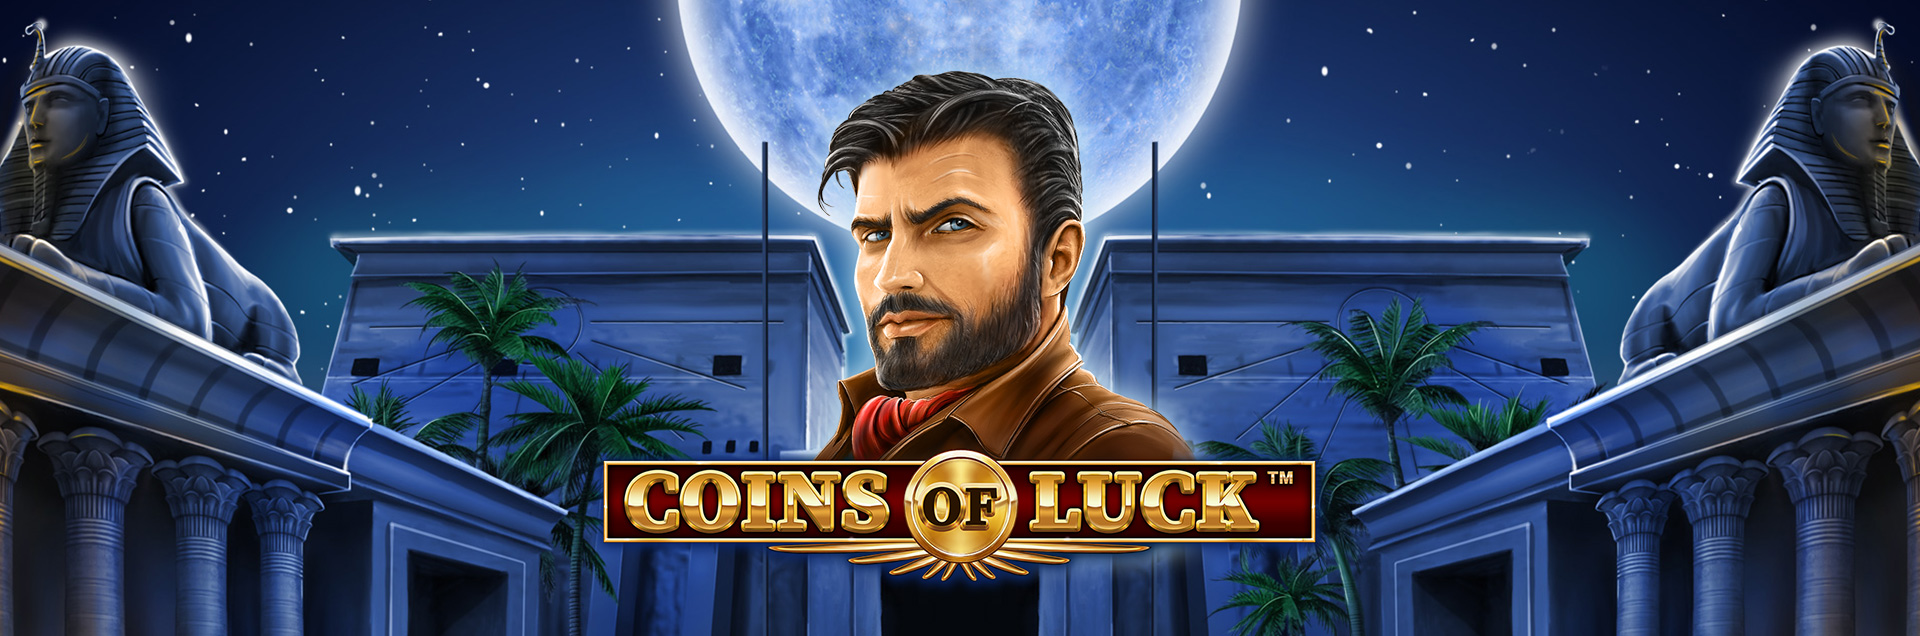 Coins of Luck header games final2